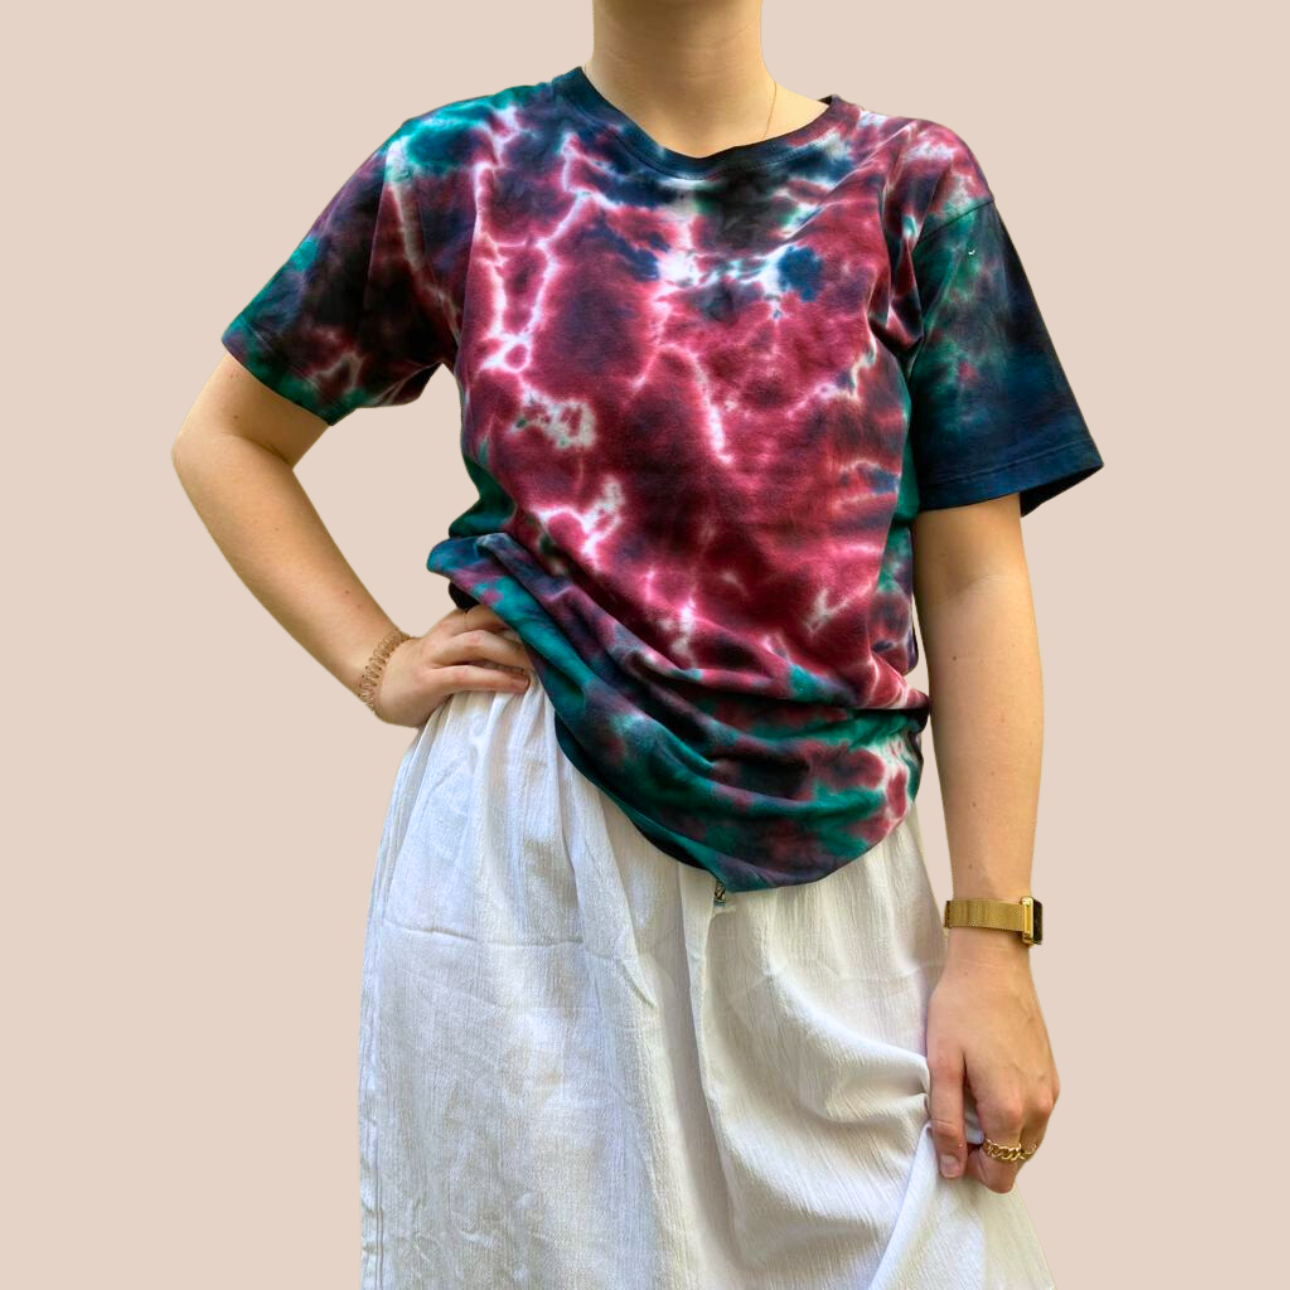 Image du t-shirt Tie and Dye de Maison Badigo, t-shirt en coton organique multicolore unique et tendance